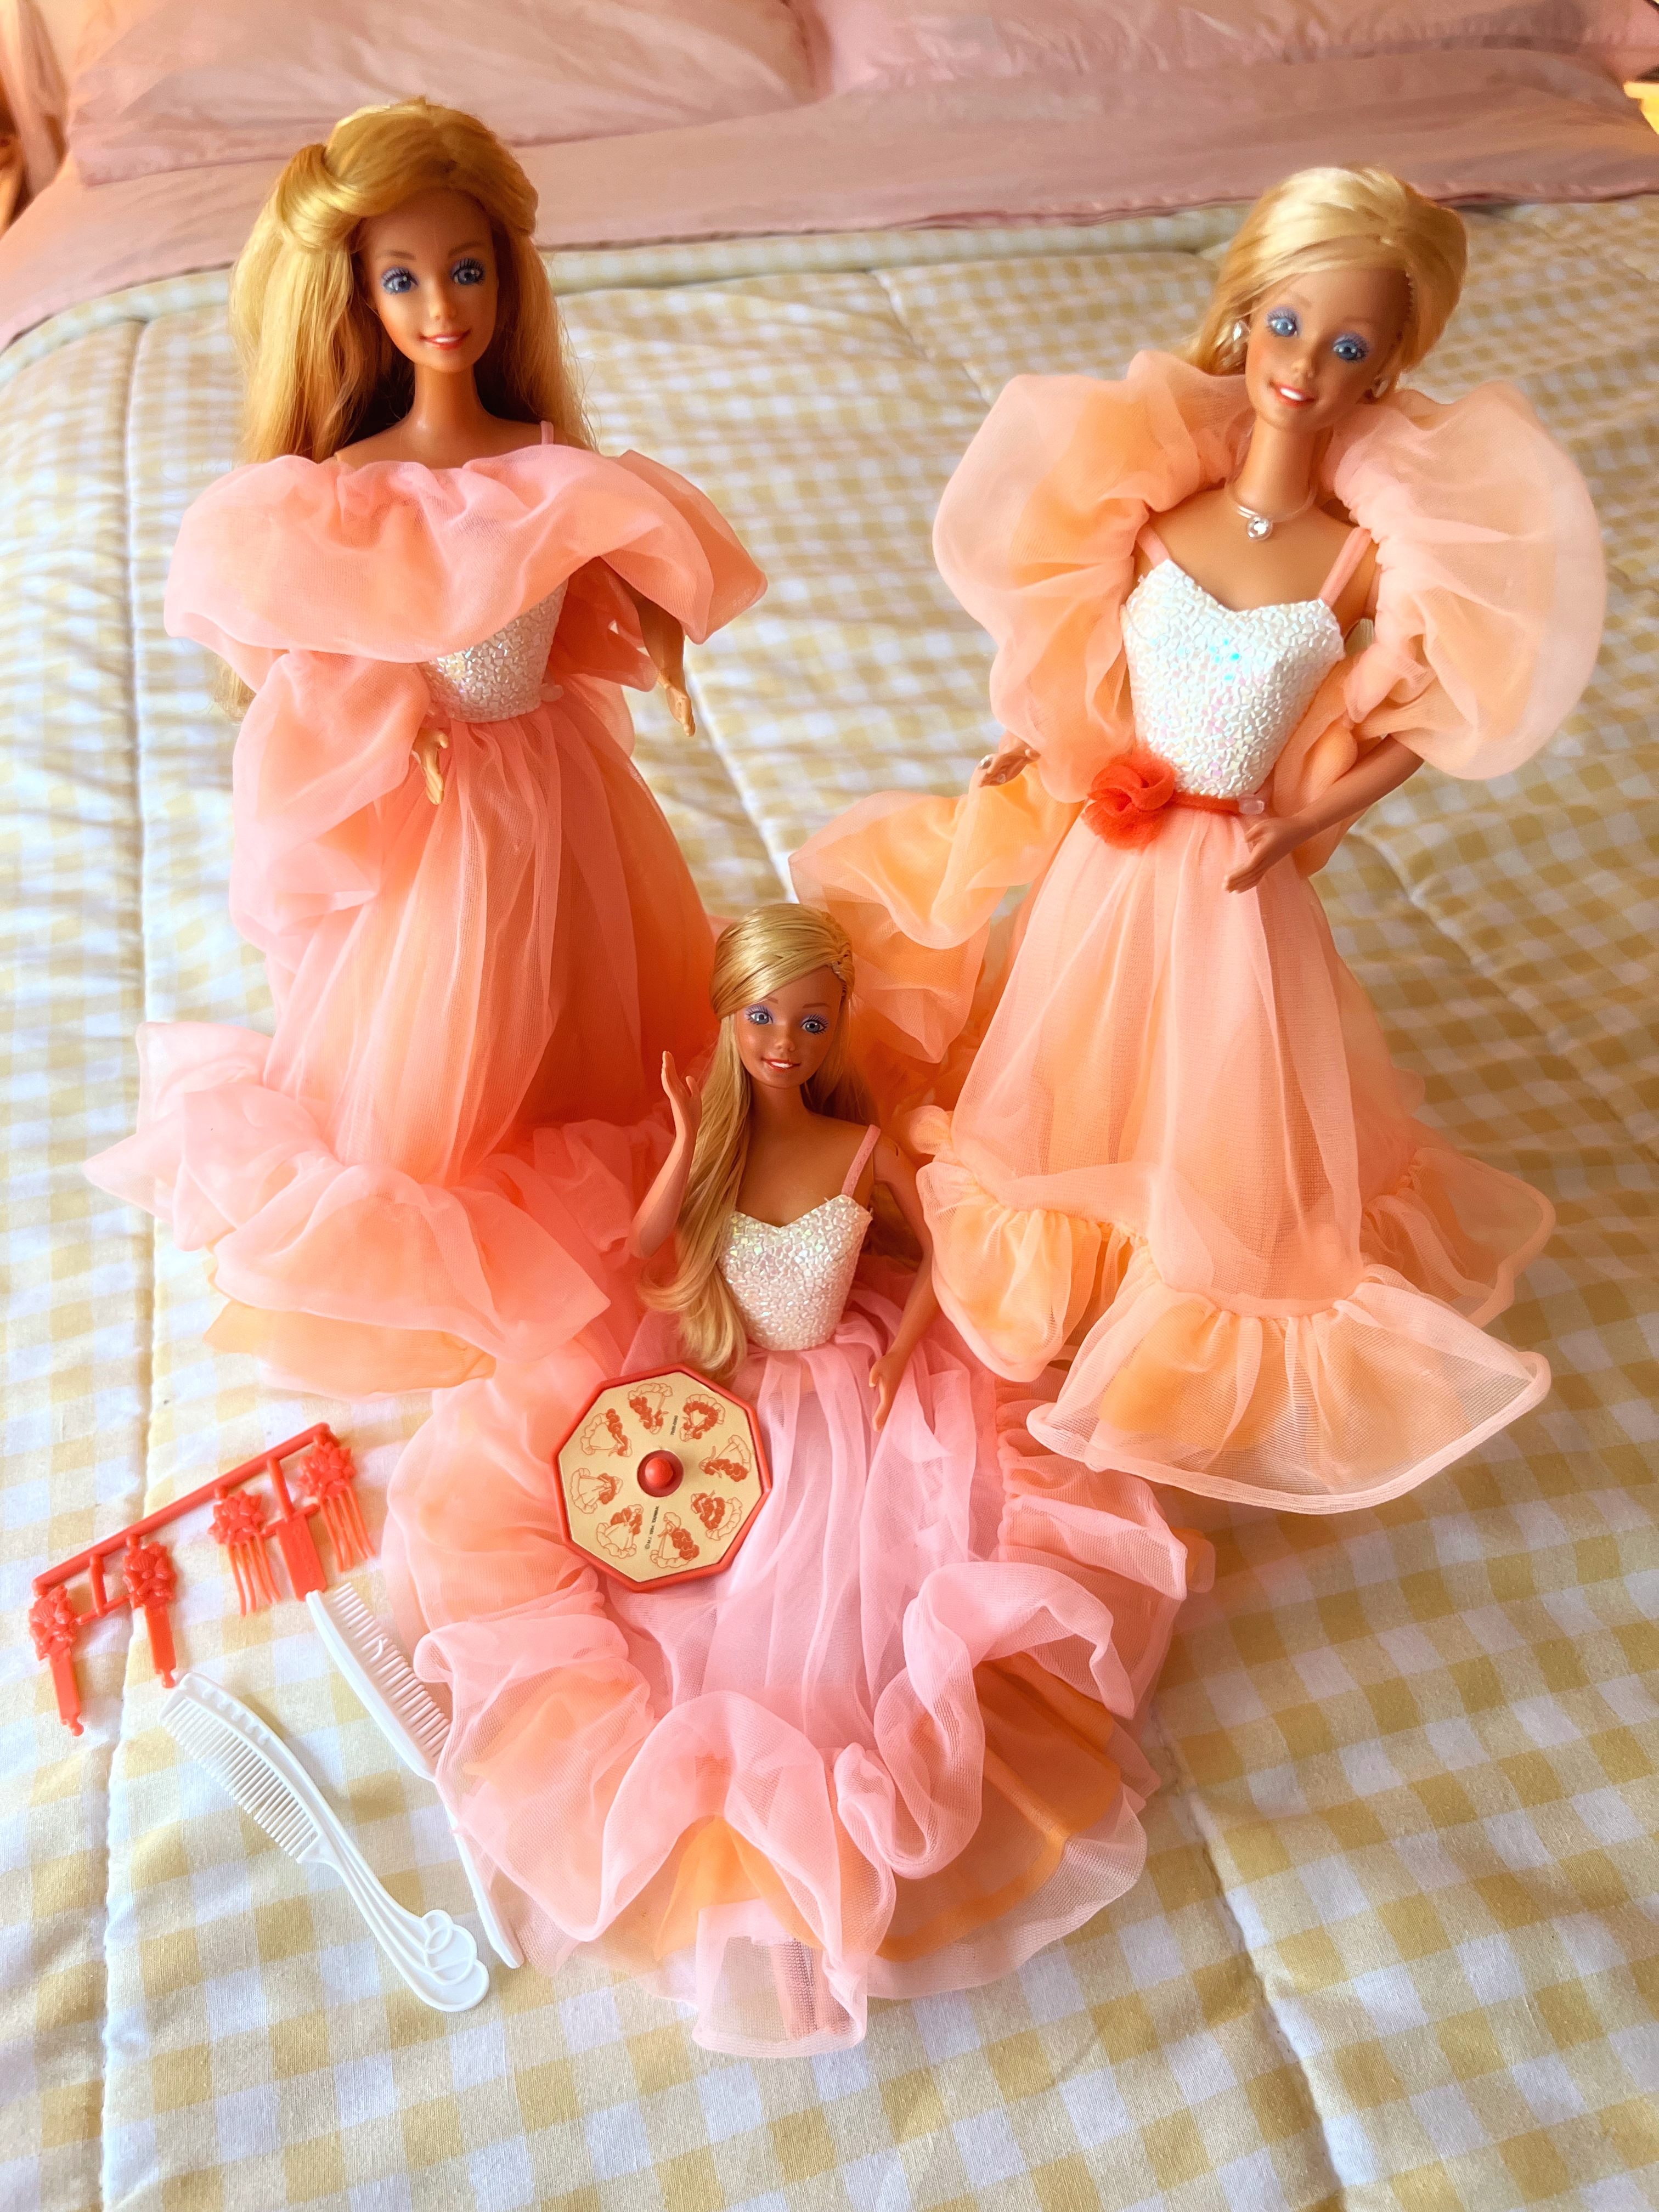 Dele læder Afvise Peaches n Cream Barbie! -